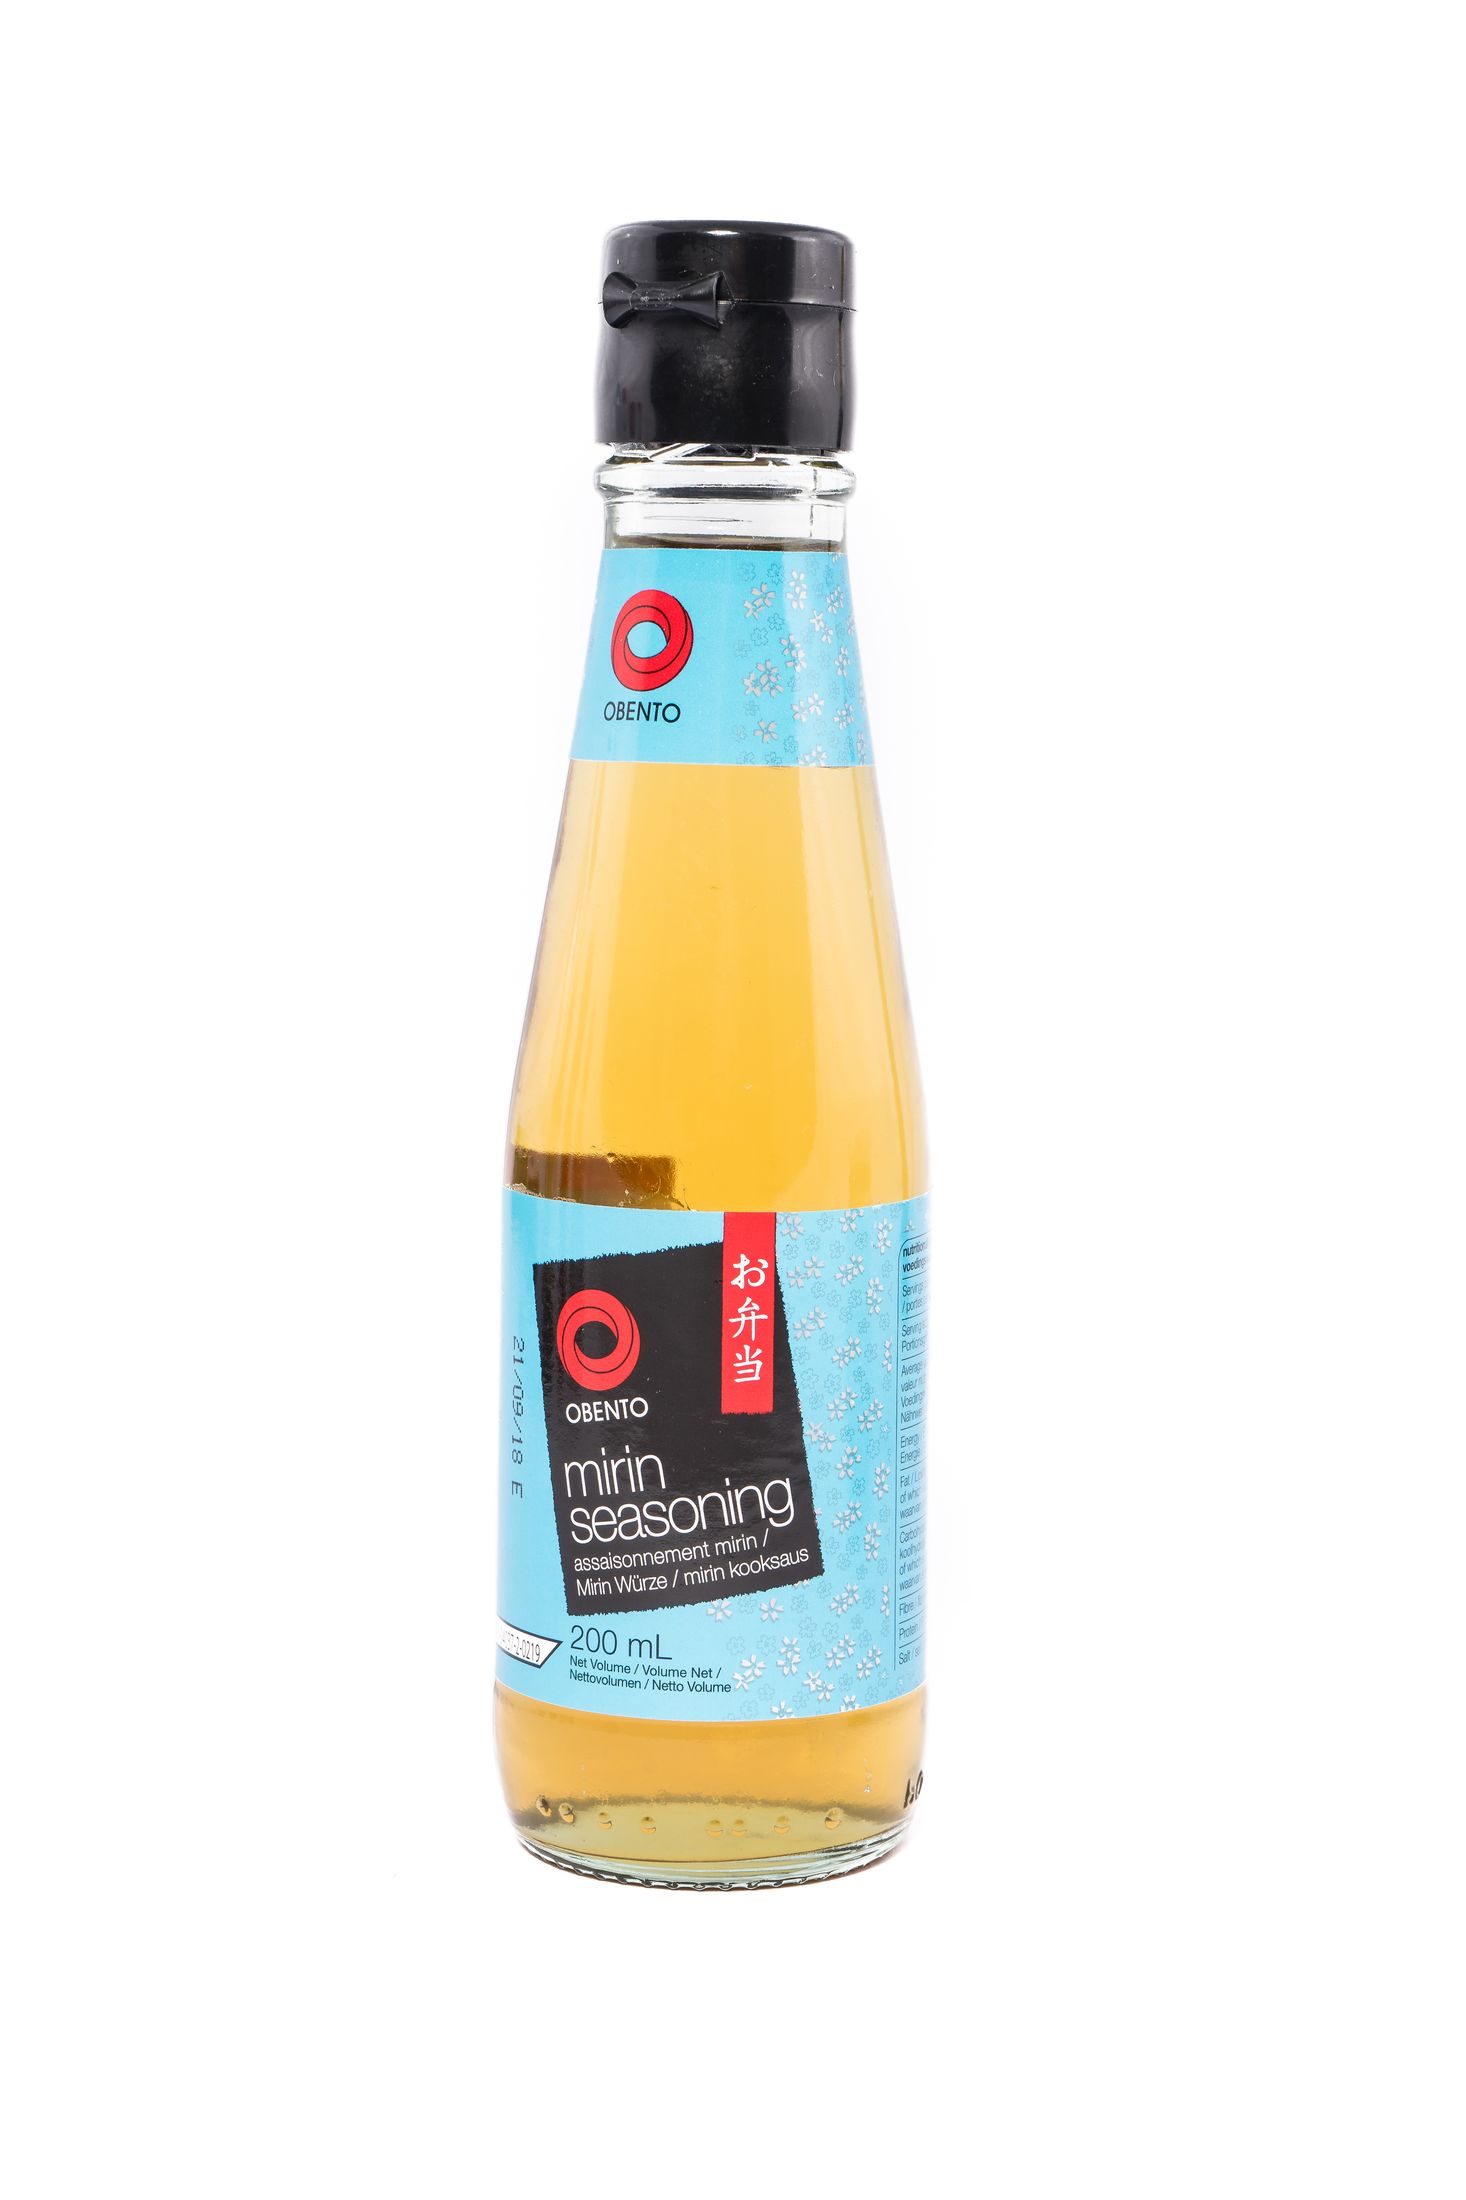 Obento  Mirin seasoning (japanse kookwijn) 200ml